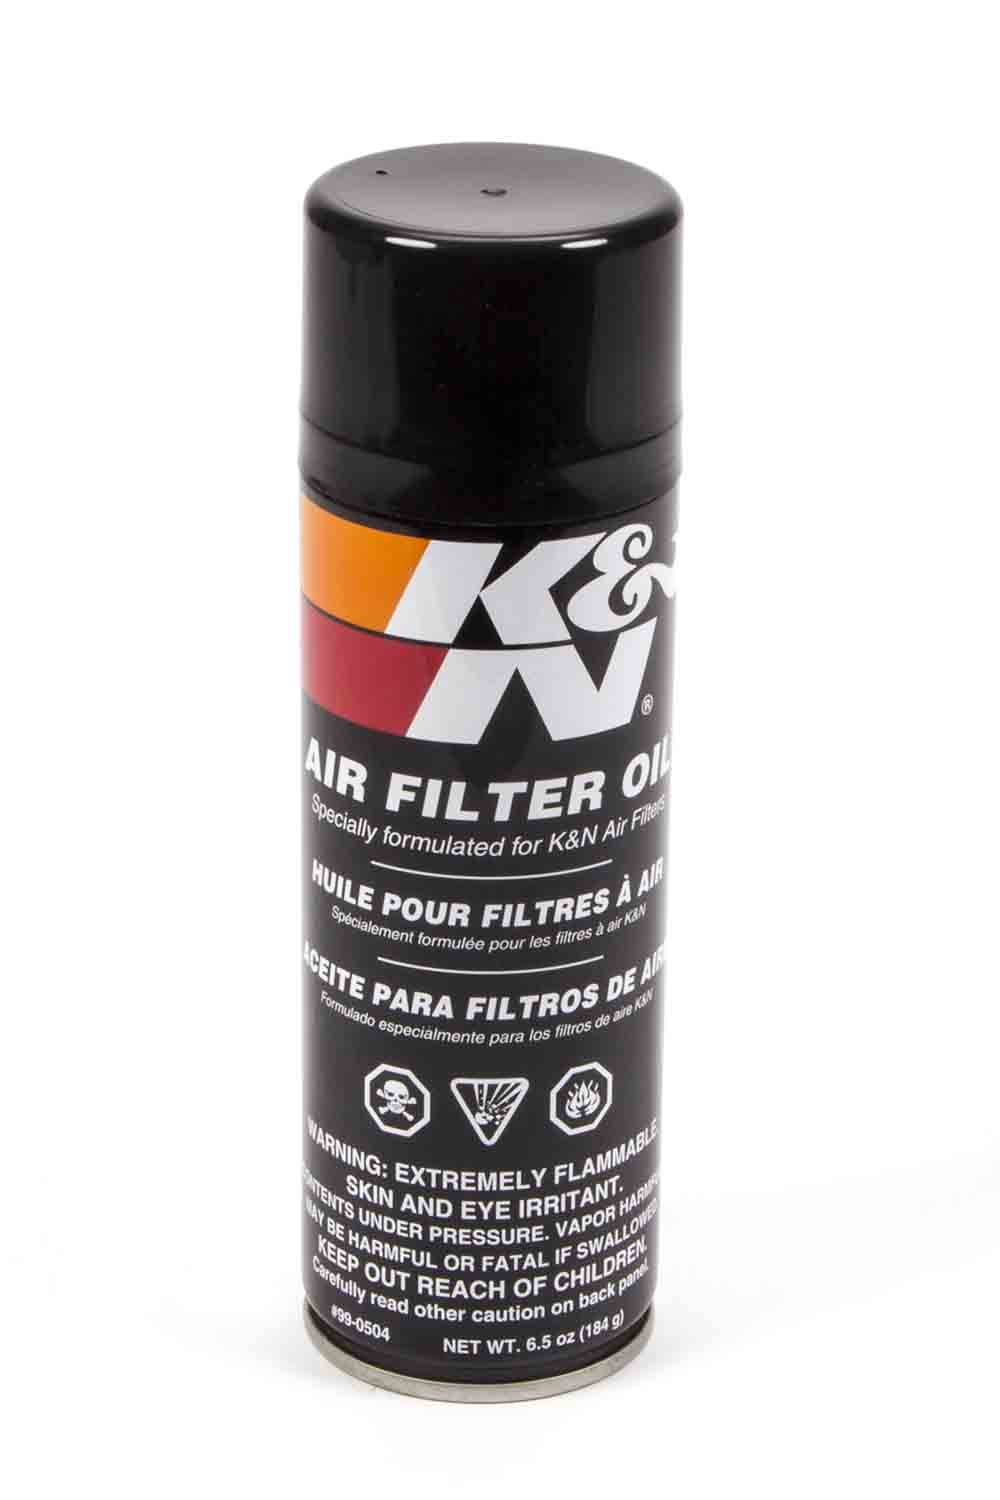 K & N Air Filter Oil, Red, 6.50 oz Aerosol, Each